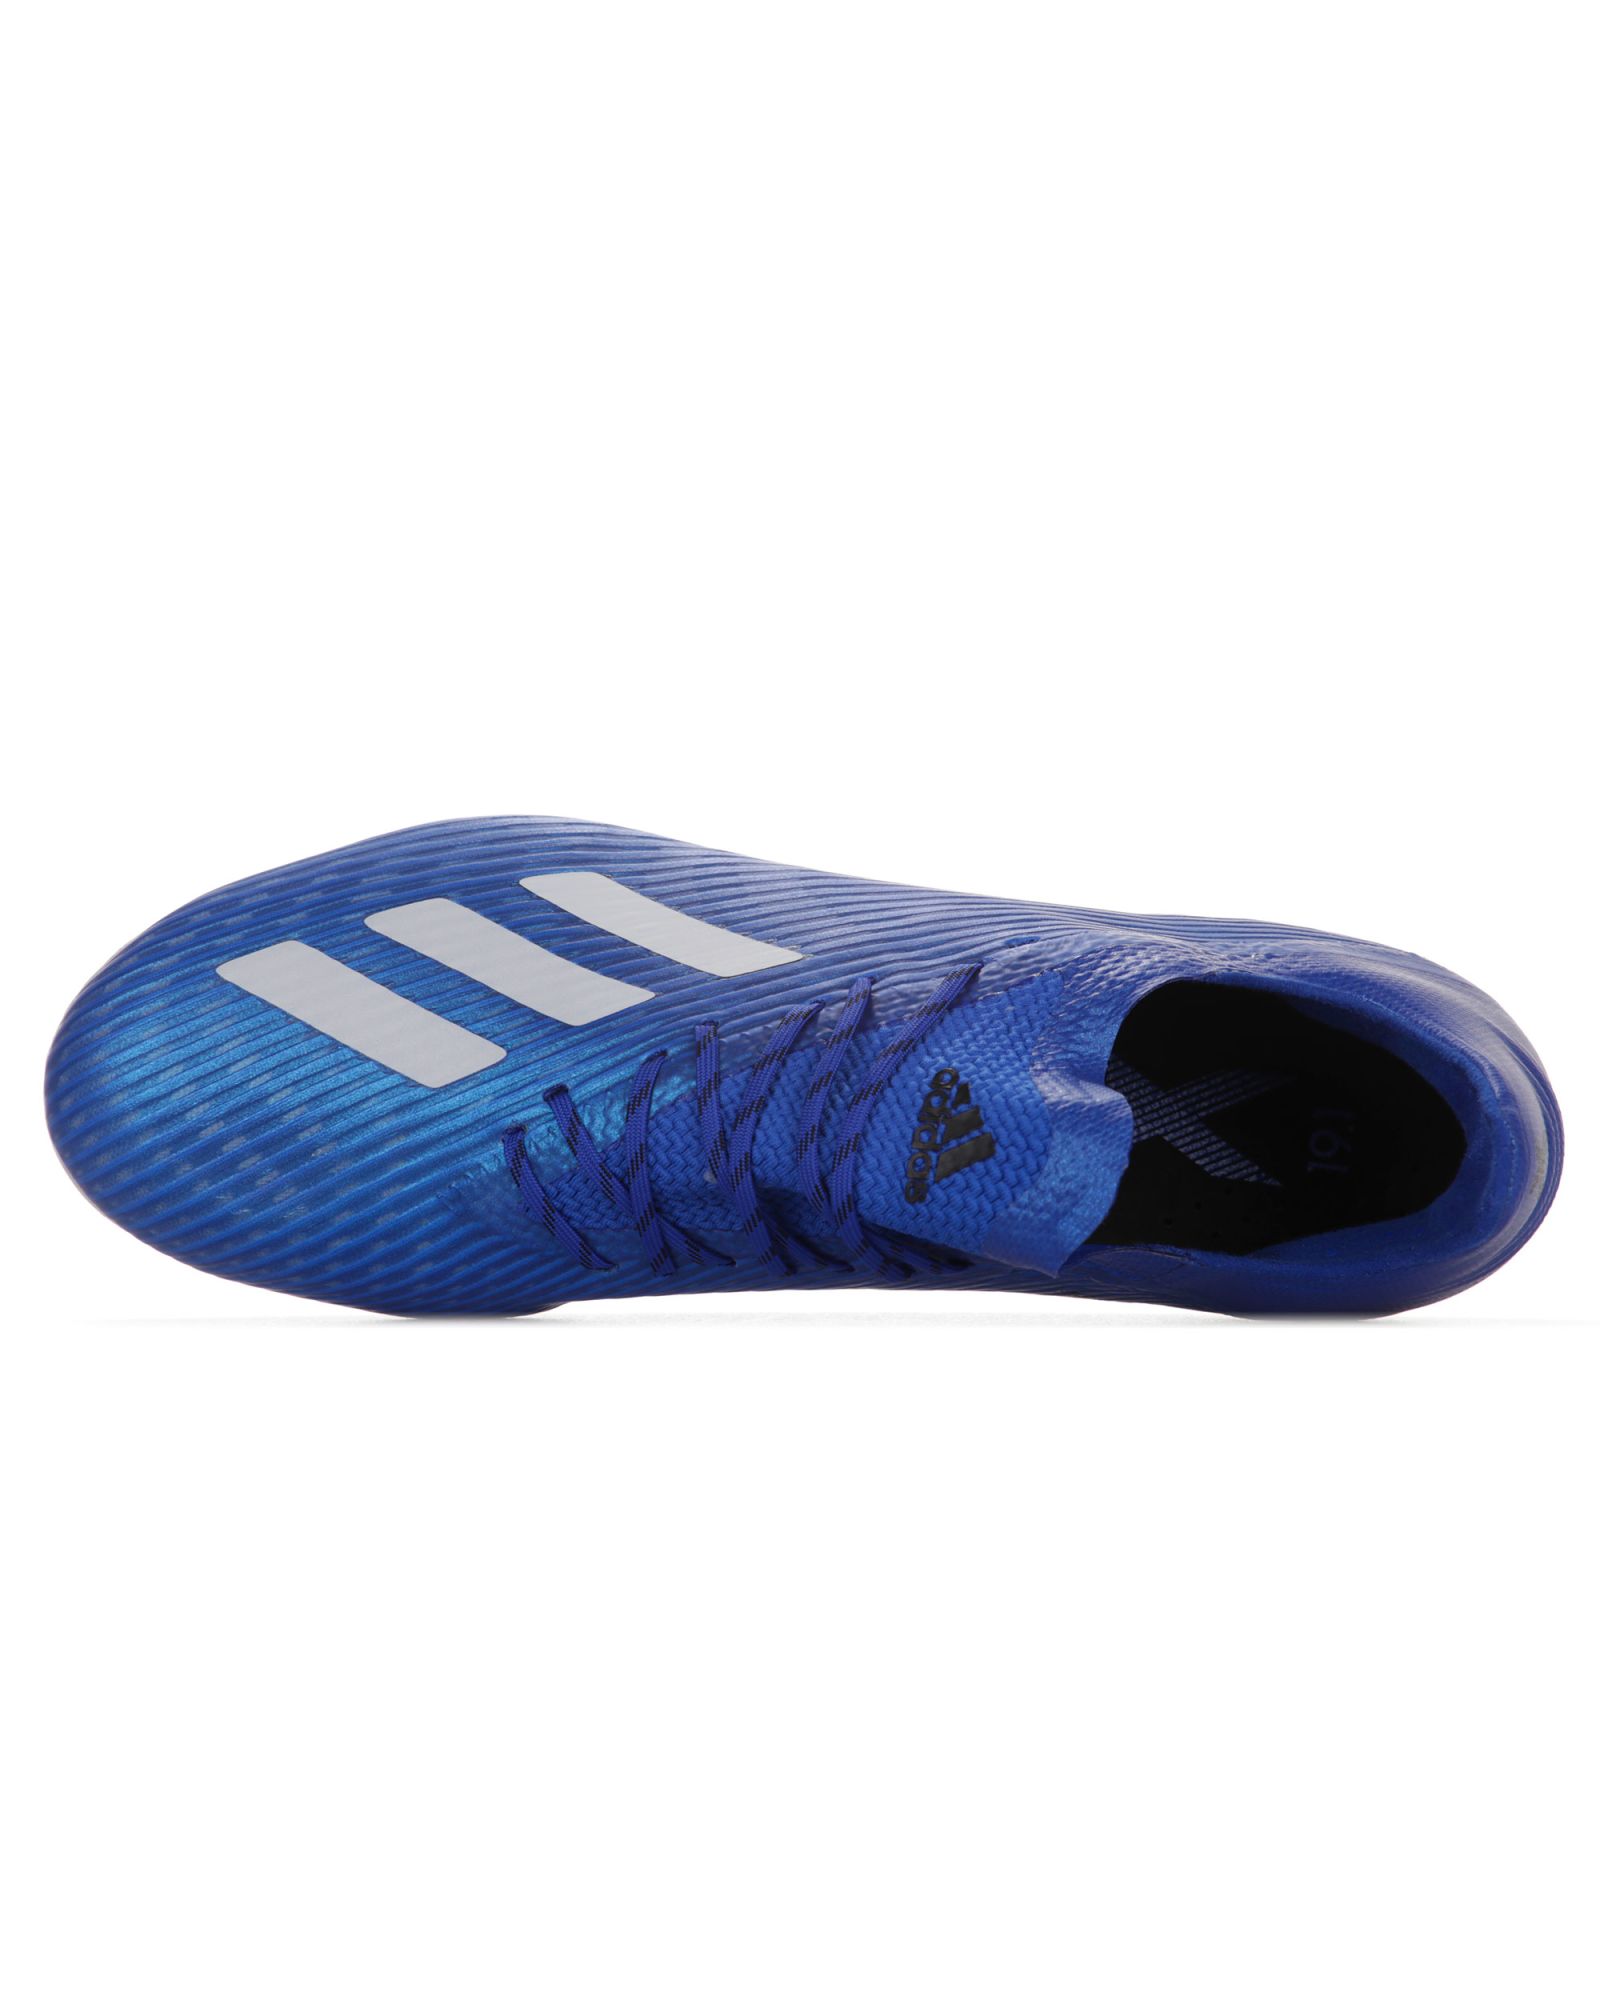 Botas de fútbol adidas X 19.1 AG Azul - Fútbol Factory